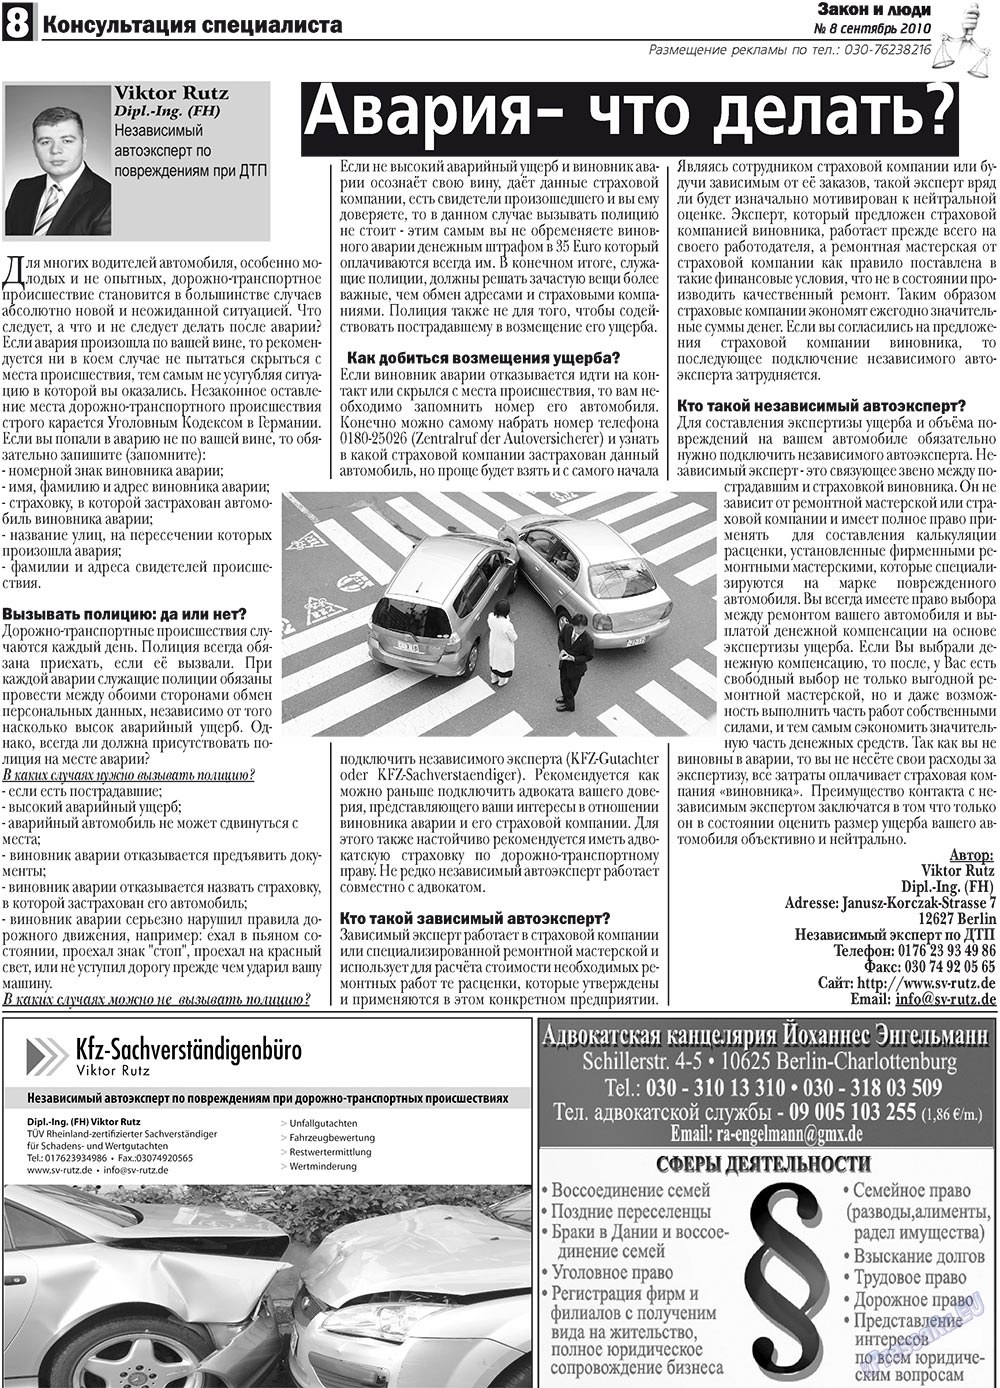 Закон и люди, газета. 2010 №8 стр.8